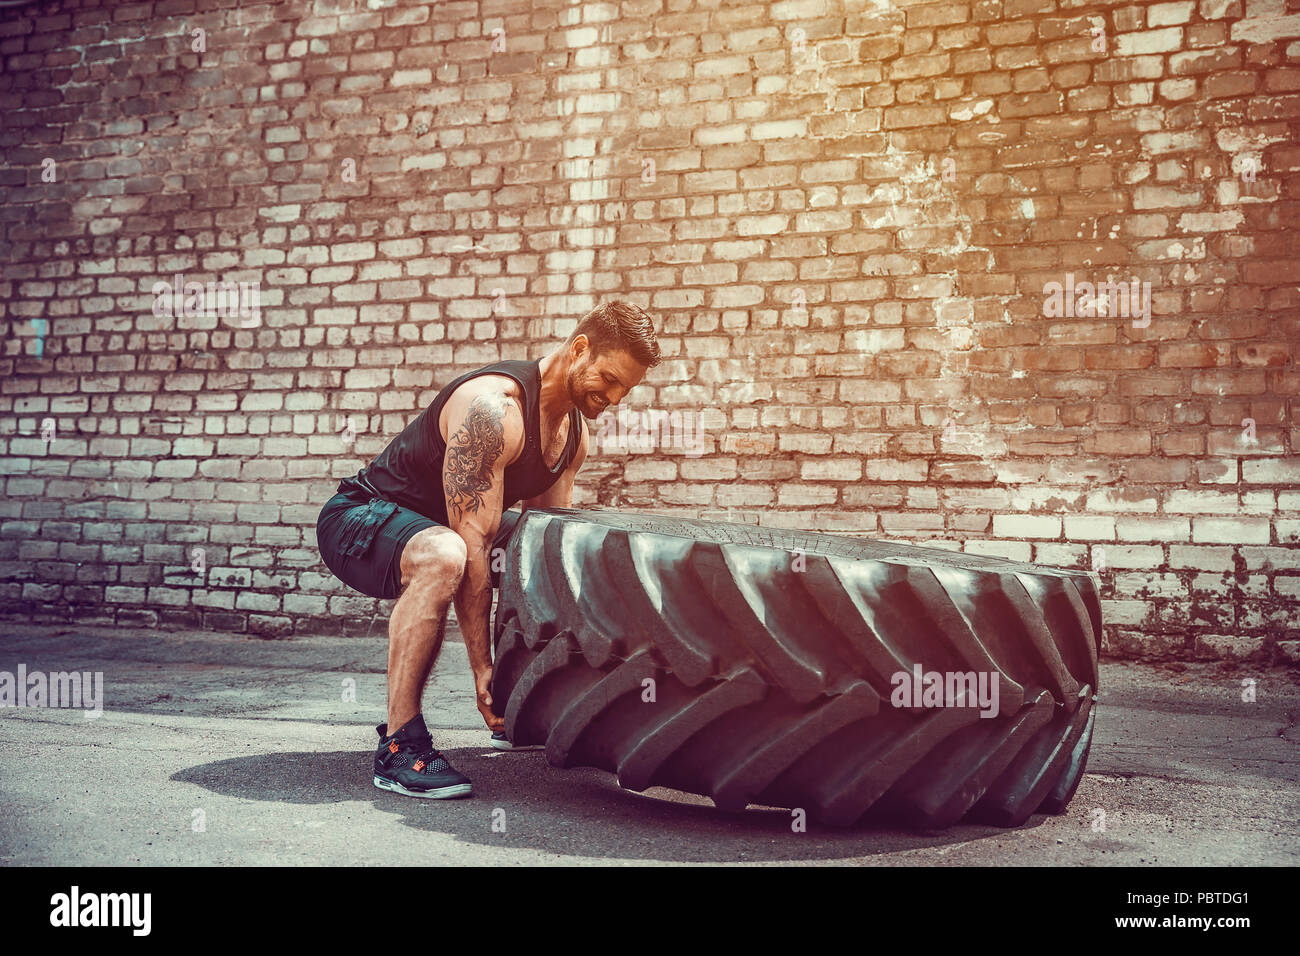 Muskulöse bärtigen tätowiert fitness Mann, die große Reifen in street Gym. Konzept heben, Workout Ausbildung. Stockfoto